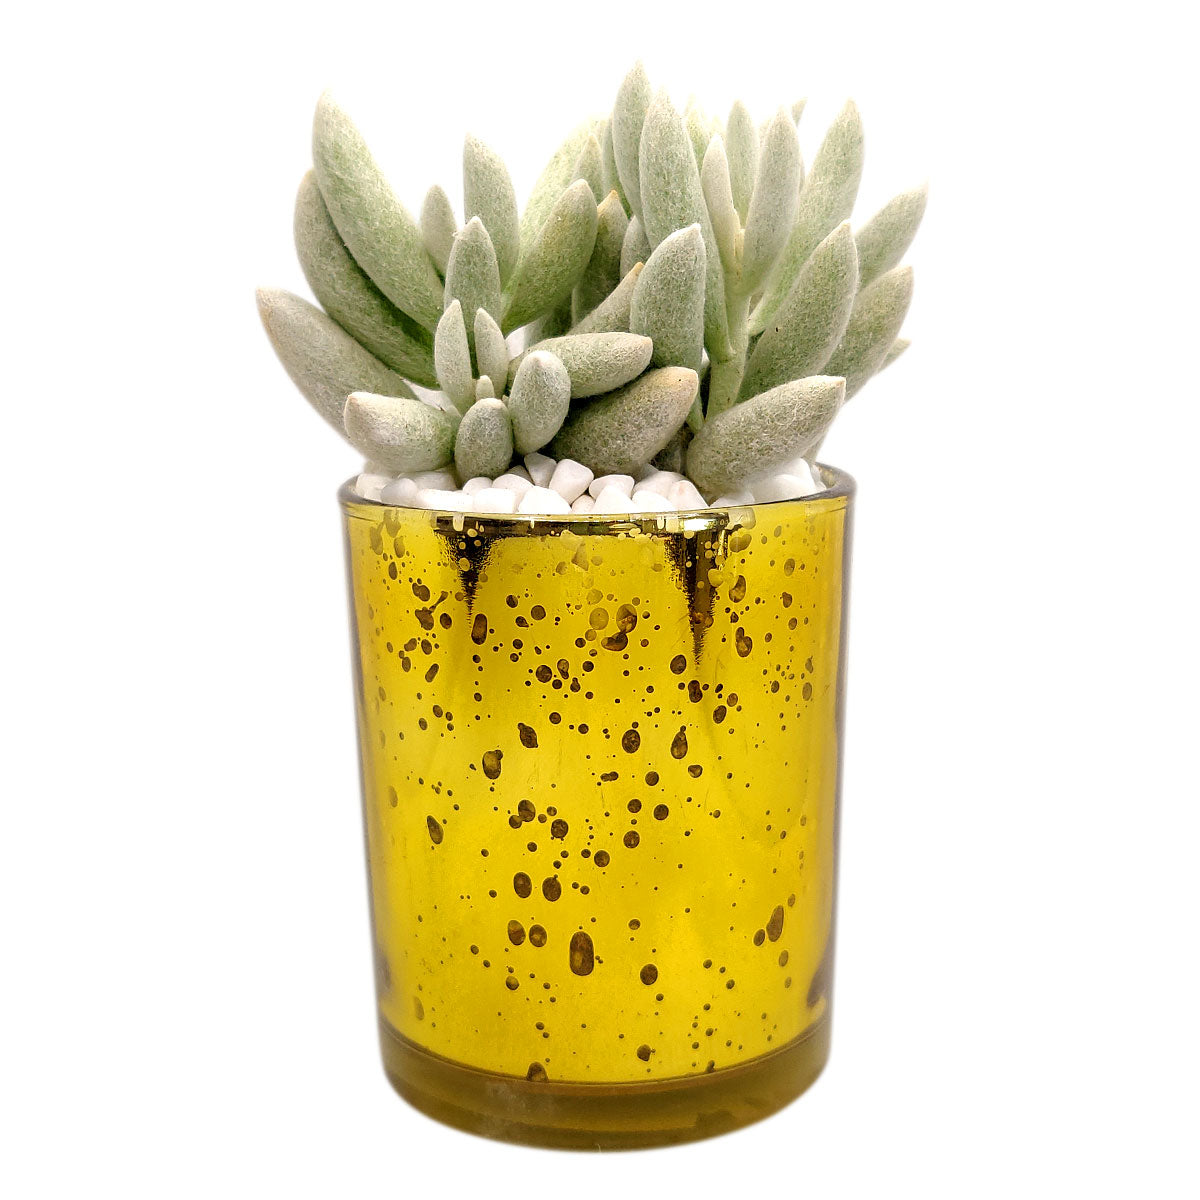  Pot for sale, Mini pot for succulent, Succulent pot decor ideas, Gold sparkly pot, Flower pot for sale, glass pots for planting, succulent gift for holiday